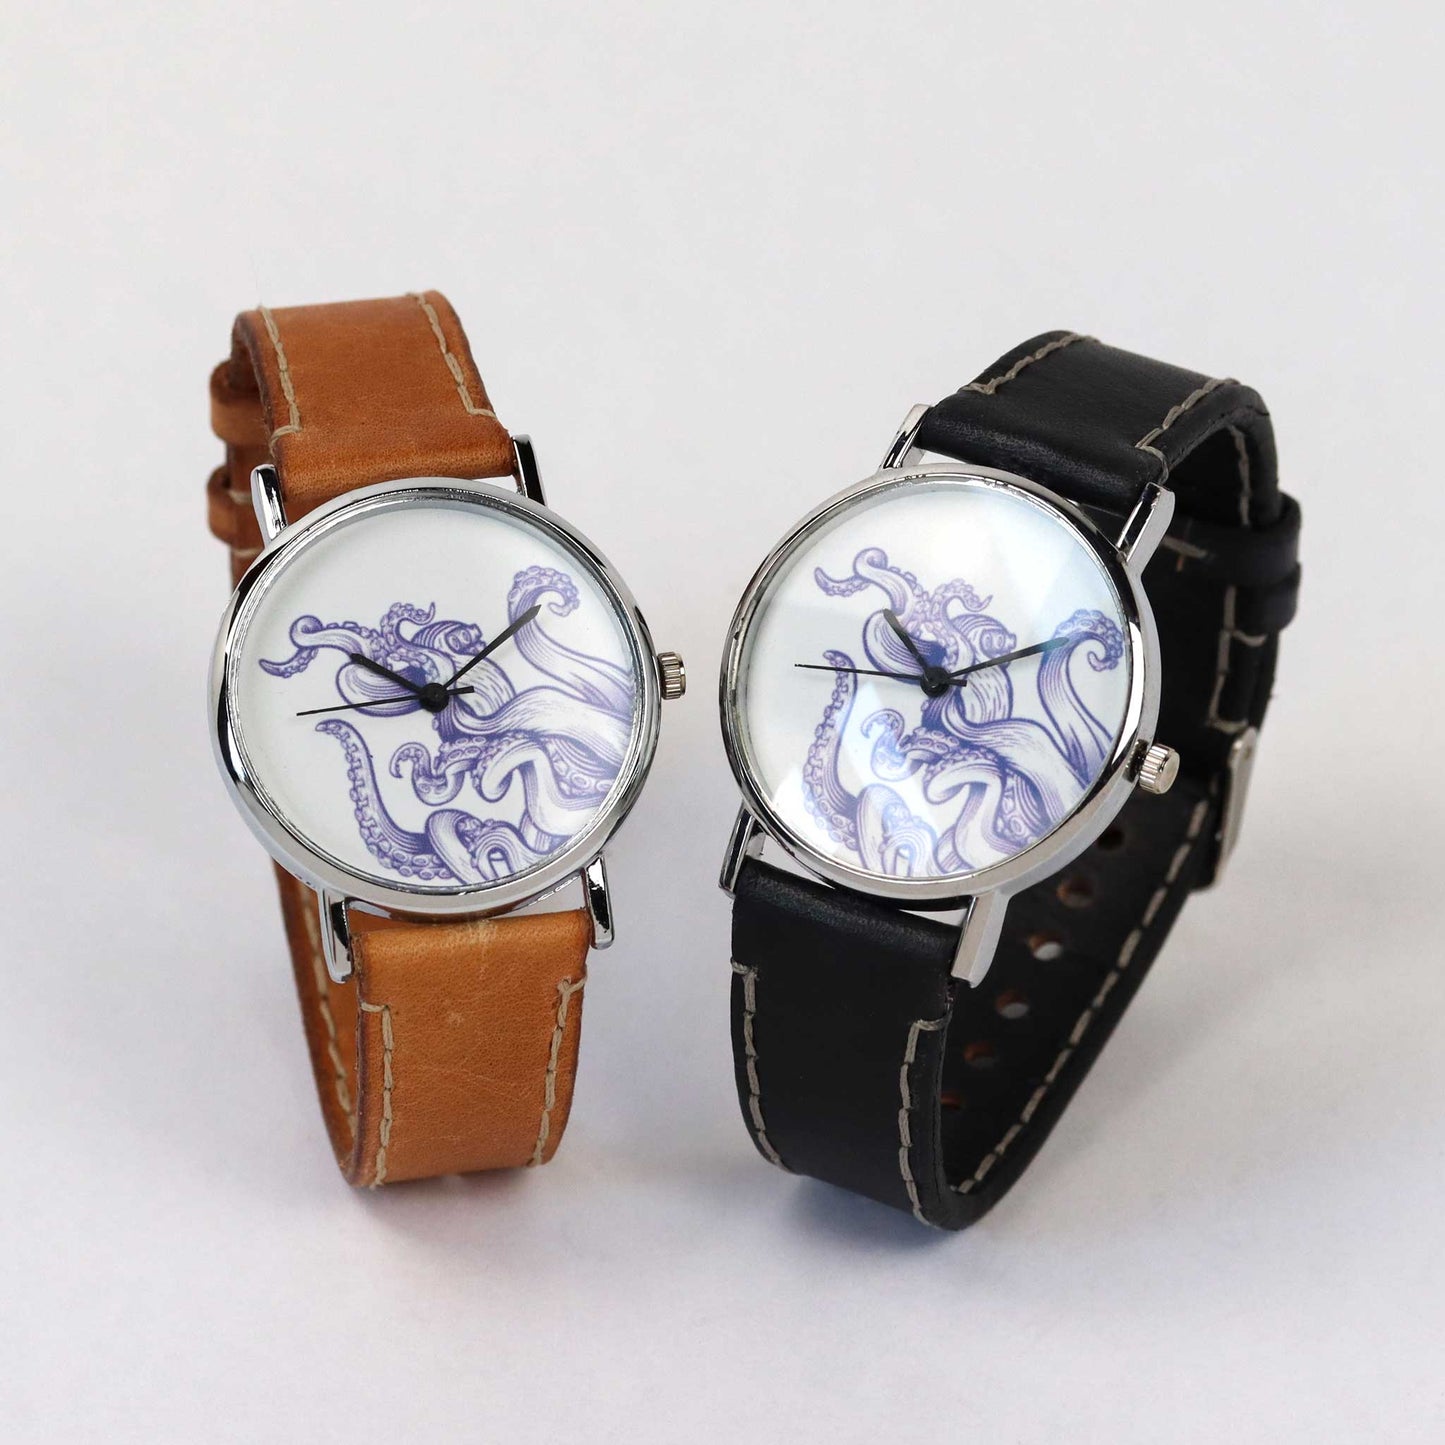 kraken wrist watches